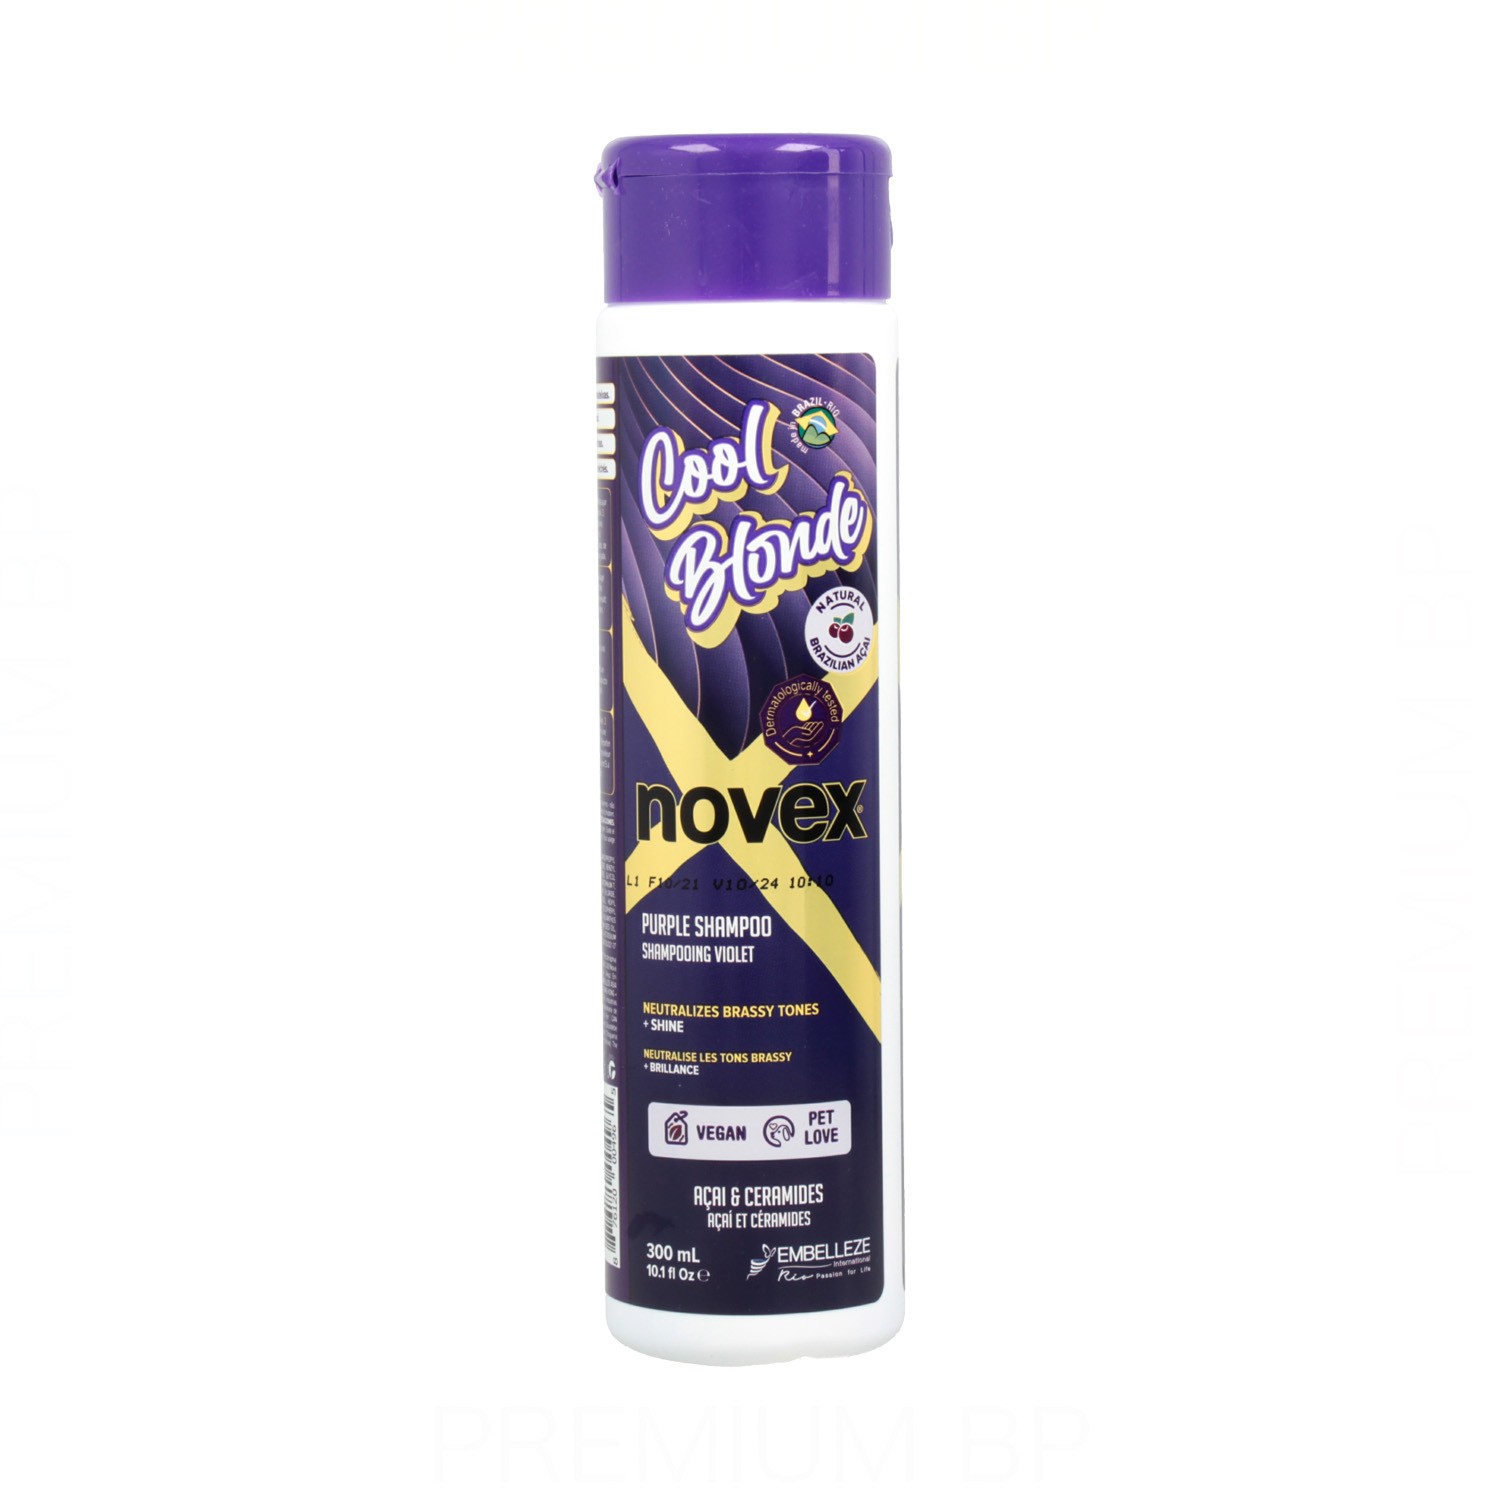 Novex - Novex cool blonde champú violeta 300 ml, champú para neutralizar los tonos amarillos de los cabellos rubios, plateados, blancos o con mechas